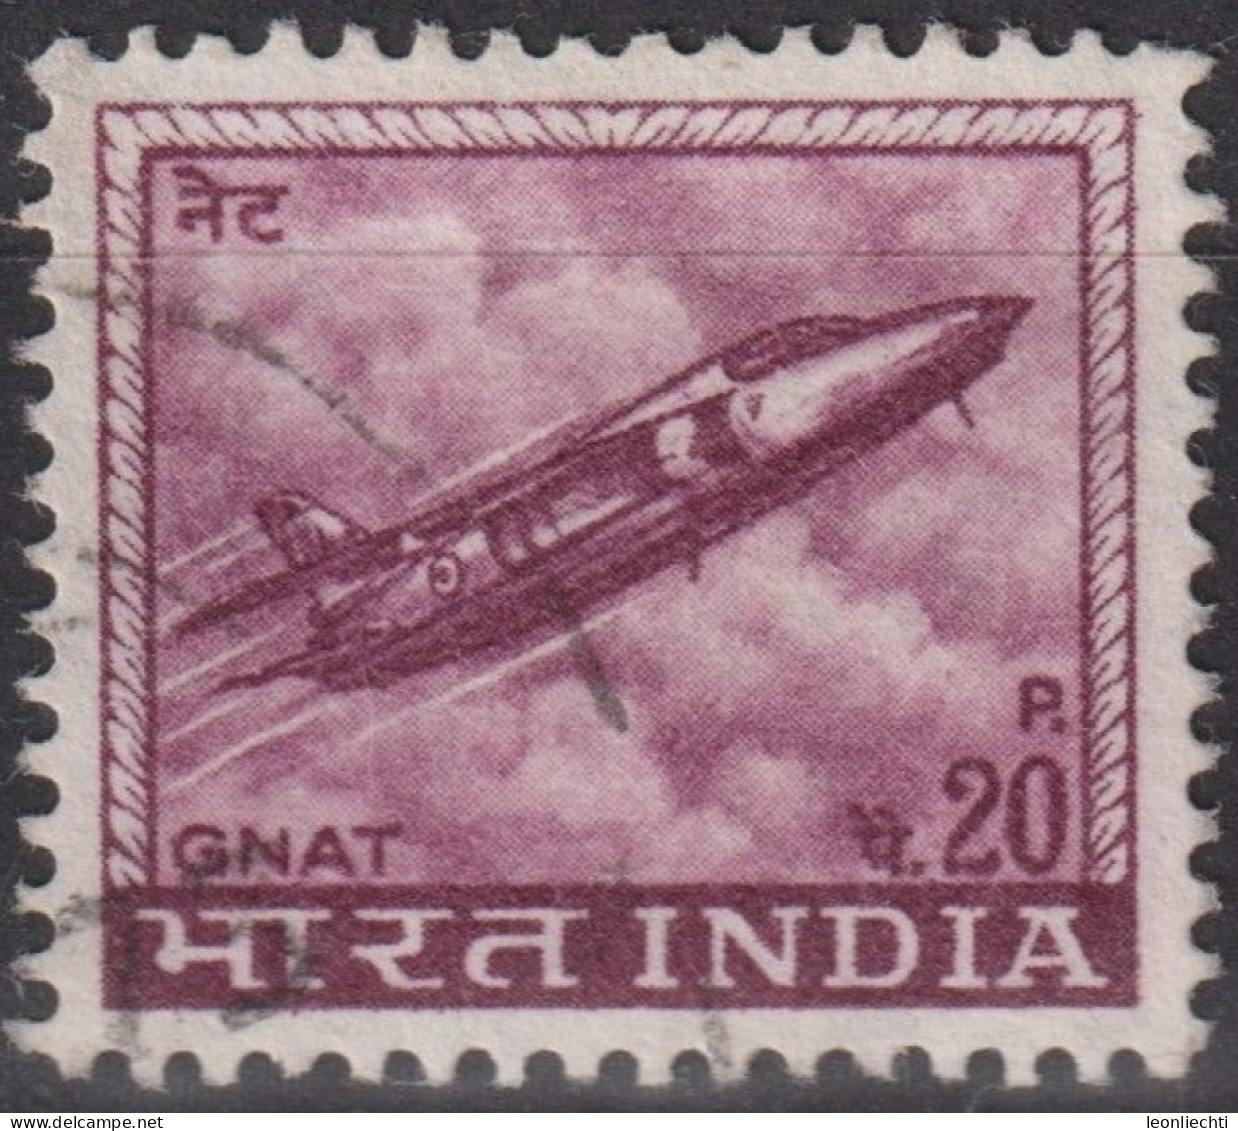 1967 Indien ° Mi:IN 436X, Sn:IN 413, Yt:IN 226, Hindustan Aircraft Industries Ajeet Jet Fighter - Gebraucht